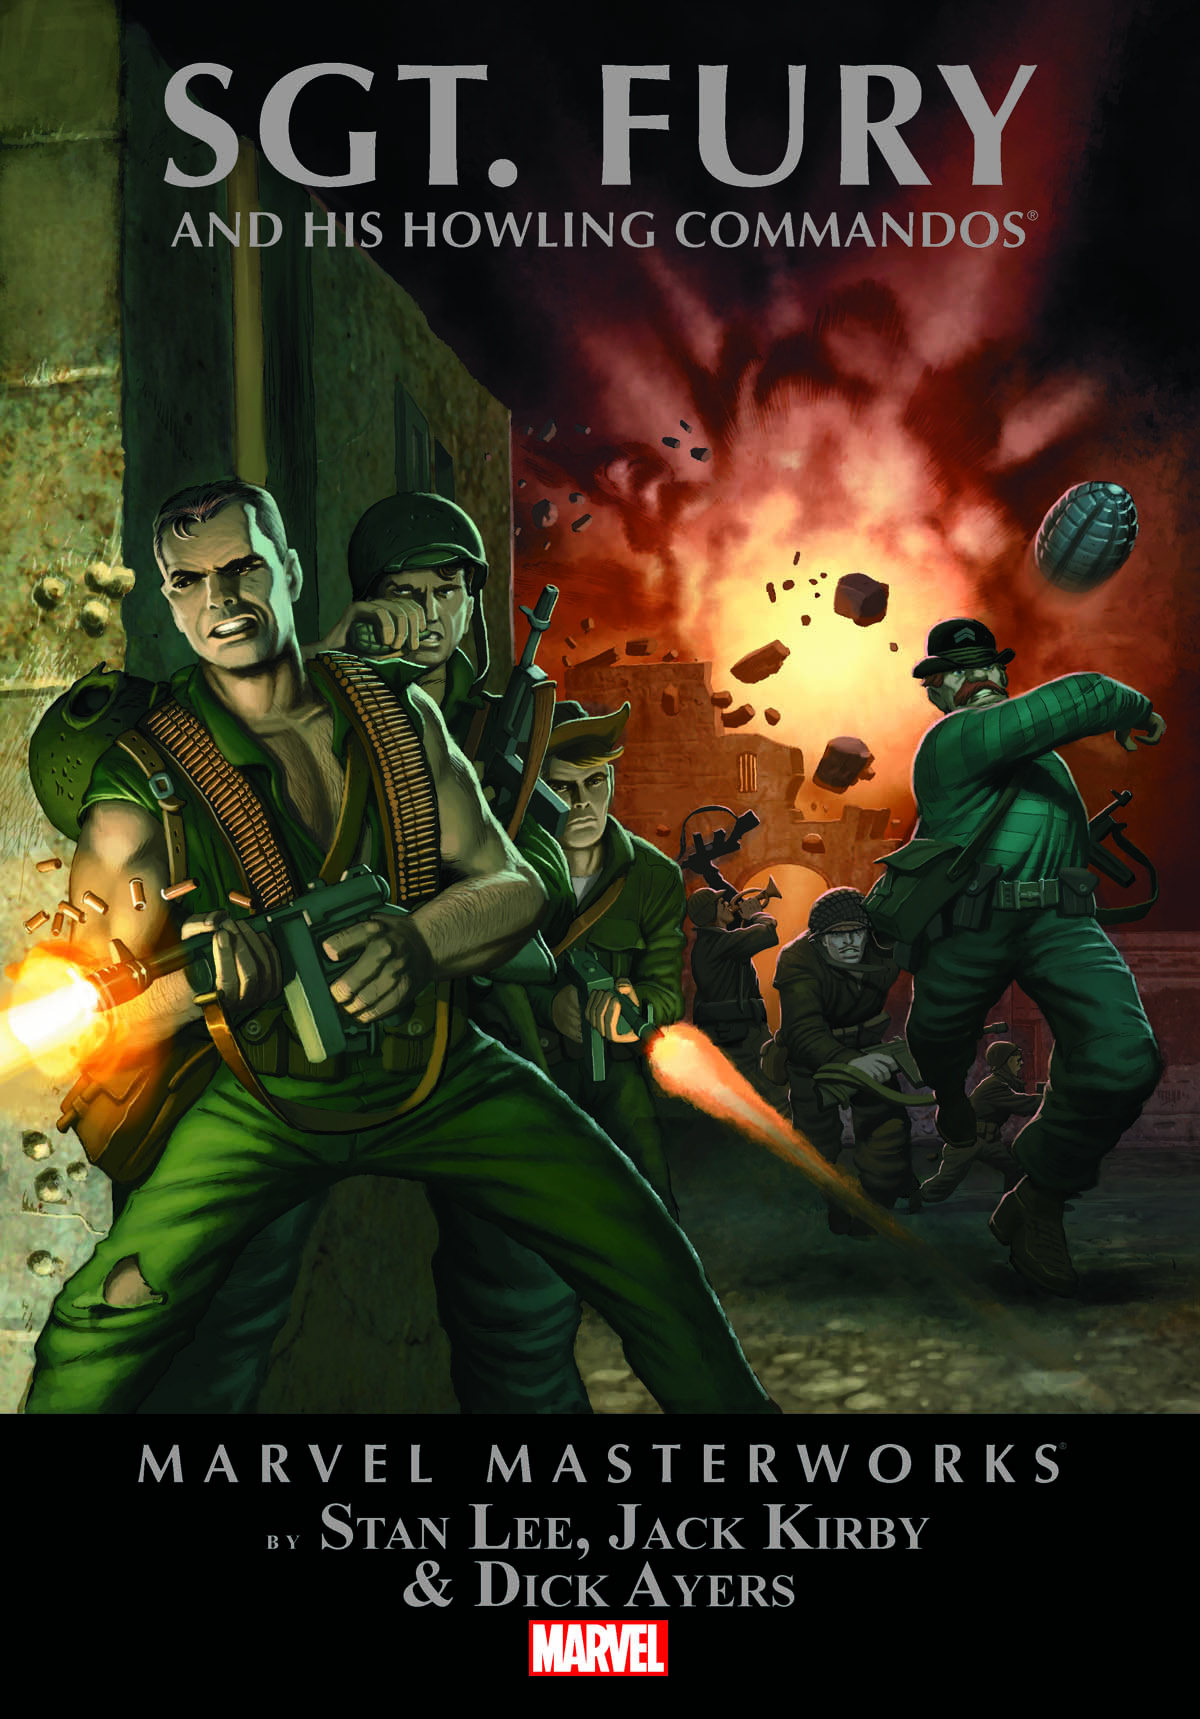 Marvel Masterworks: Sgt. Fury (Trade Paperback)